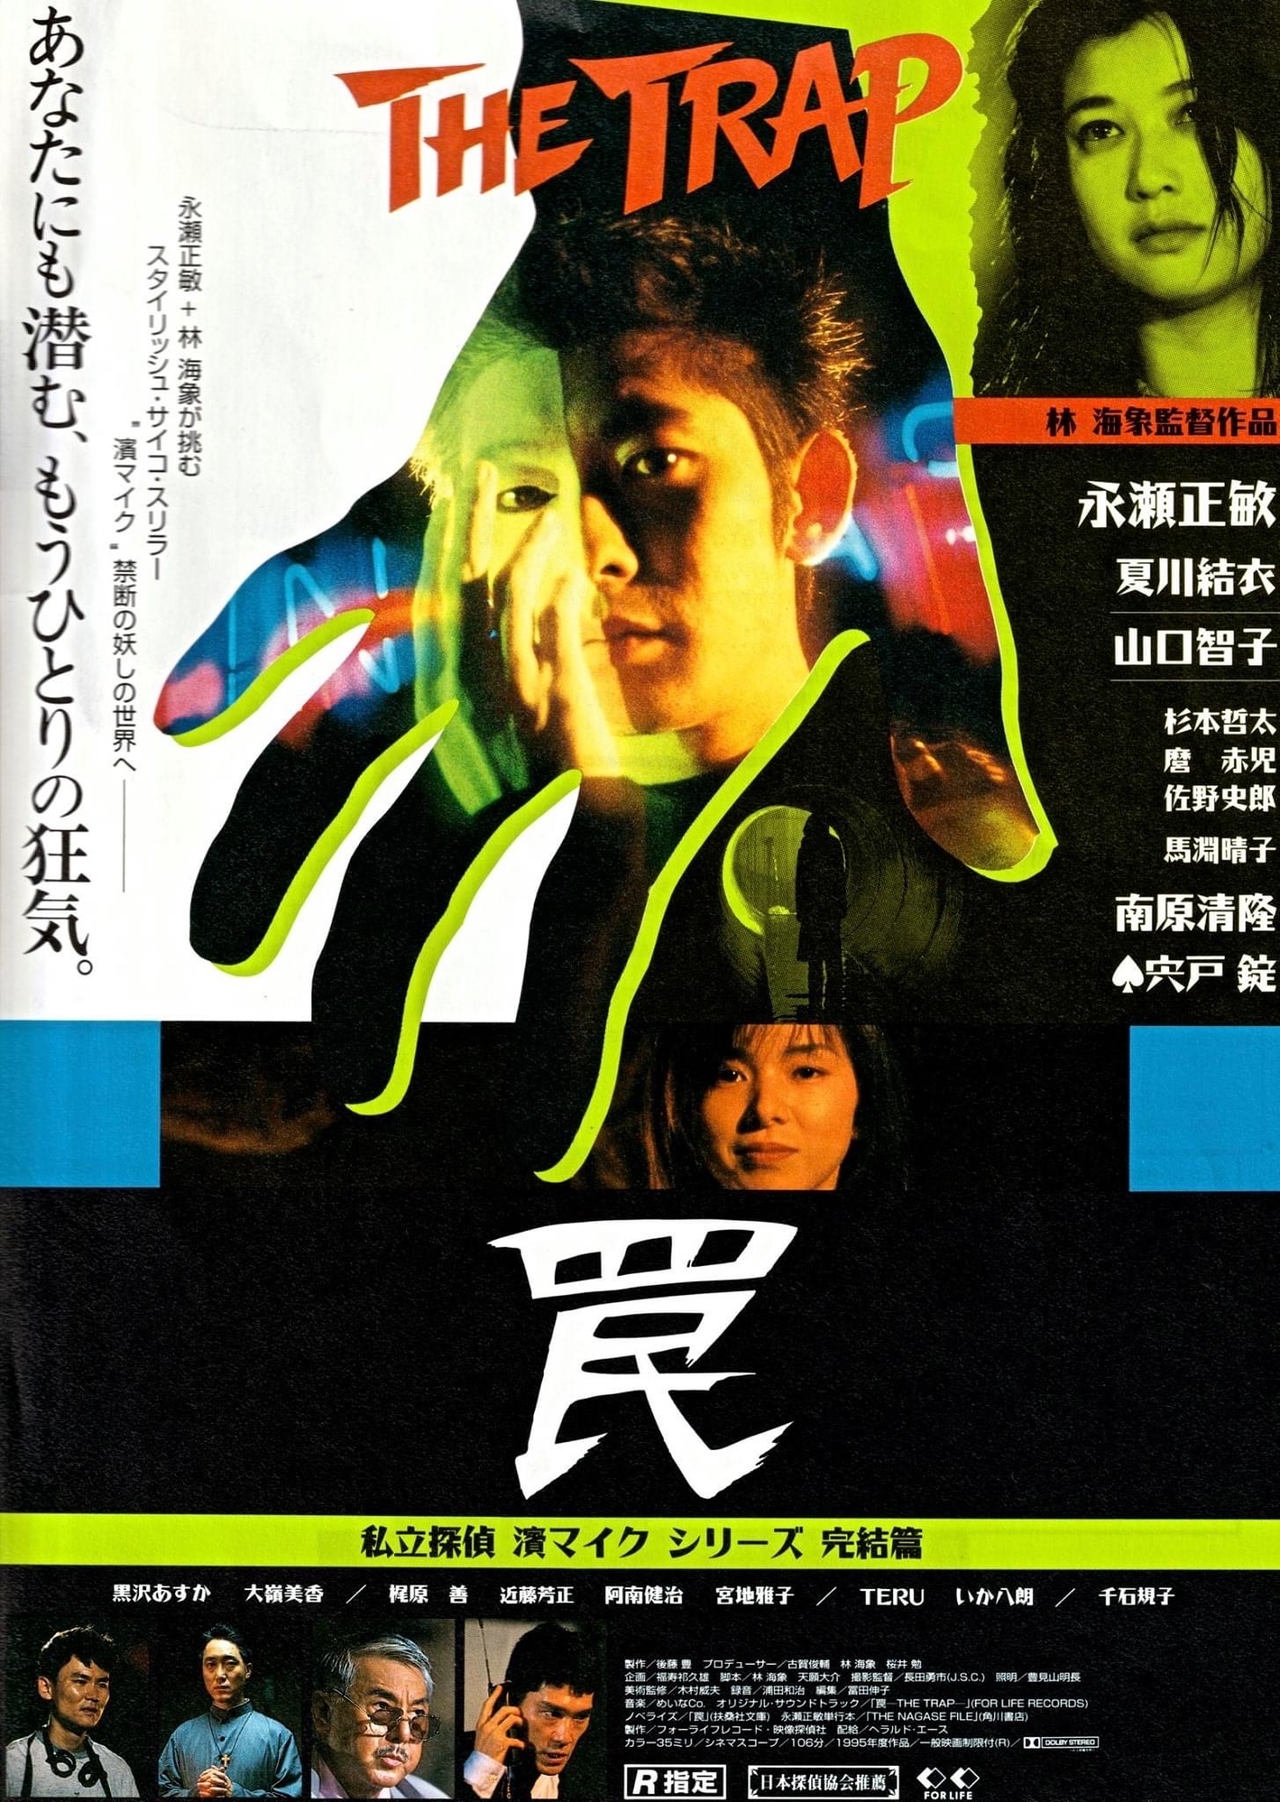 公開30周年記念「私立探偵濱マイク」シリーズ、4Kリマスター版で7月28